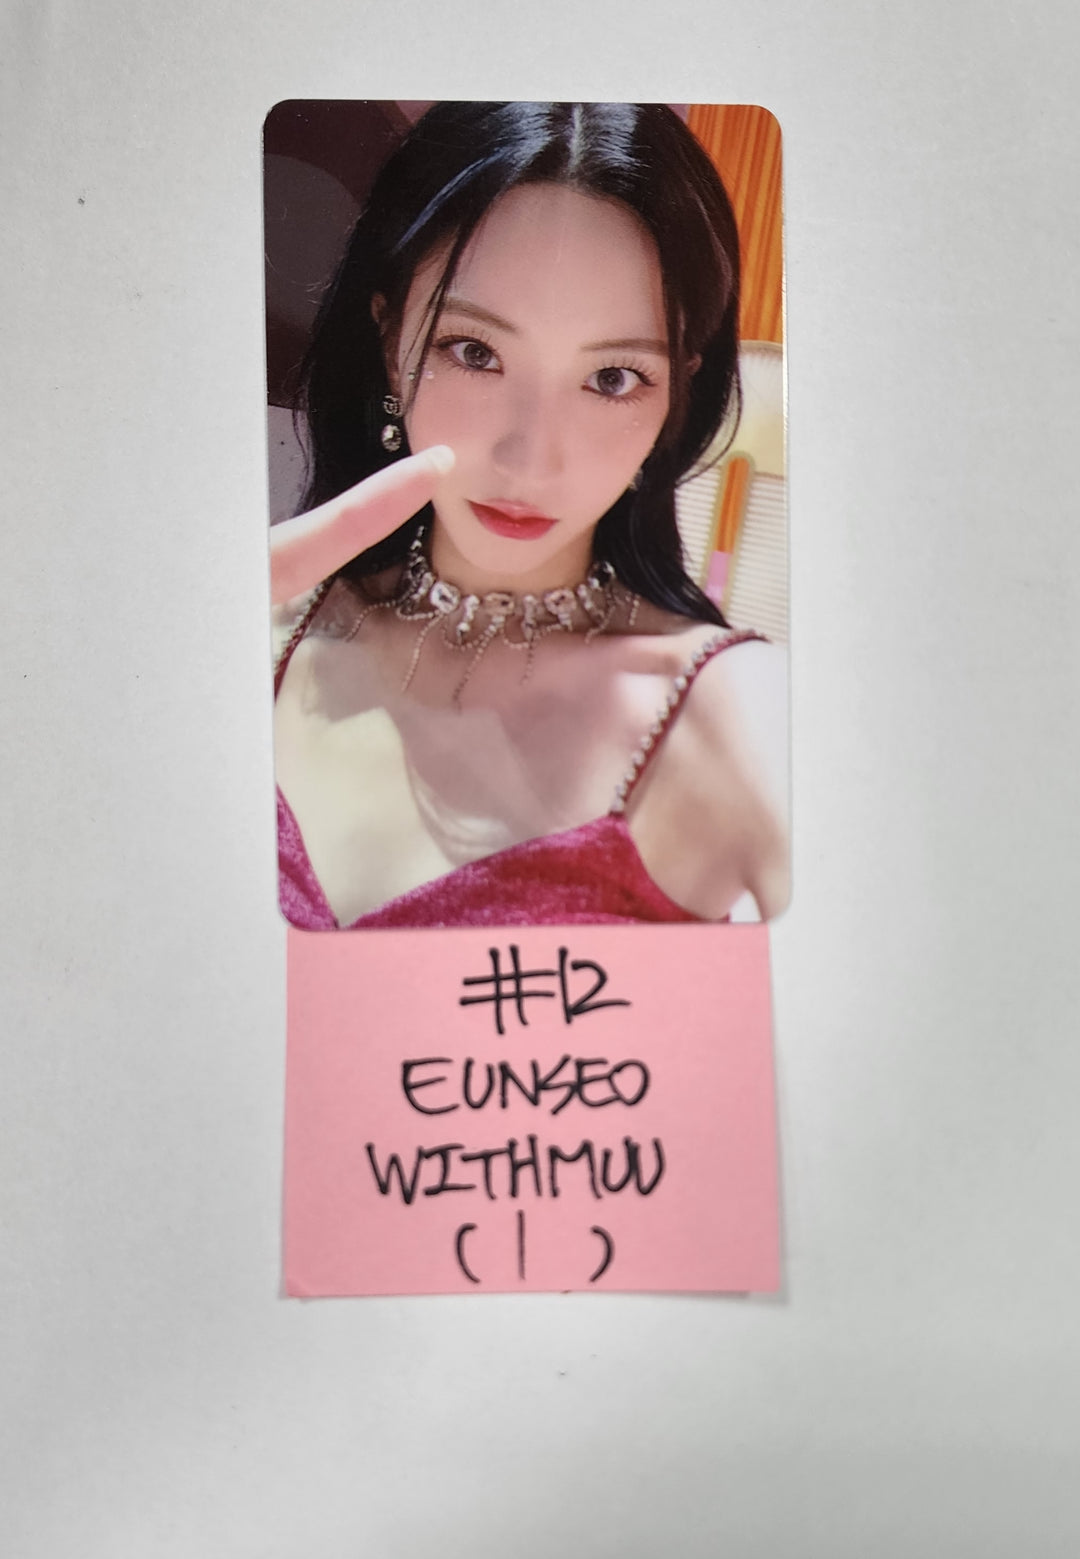 우주소녀 "시퀀스" - Withmuu 럭키드로우 이벤트 PVC 포토카드